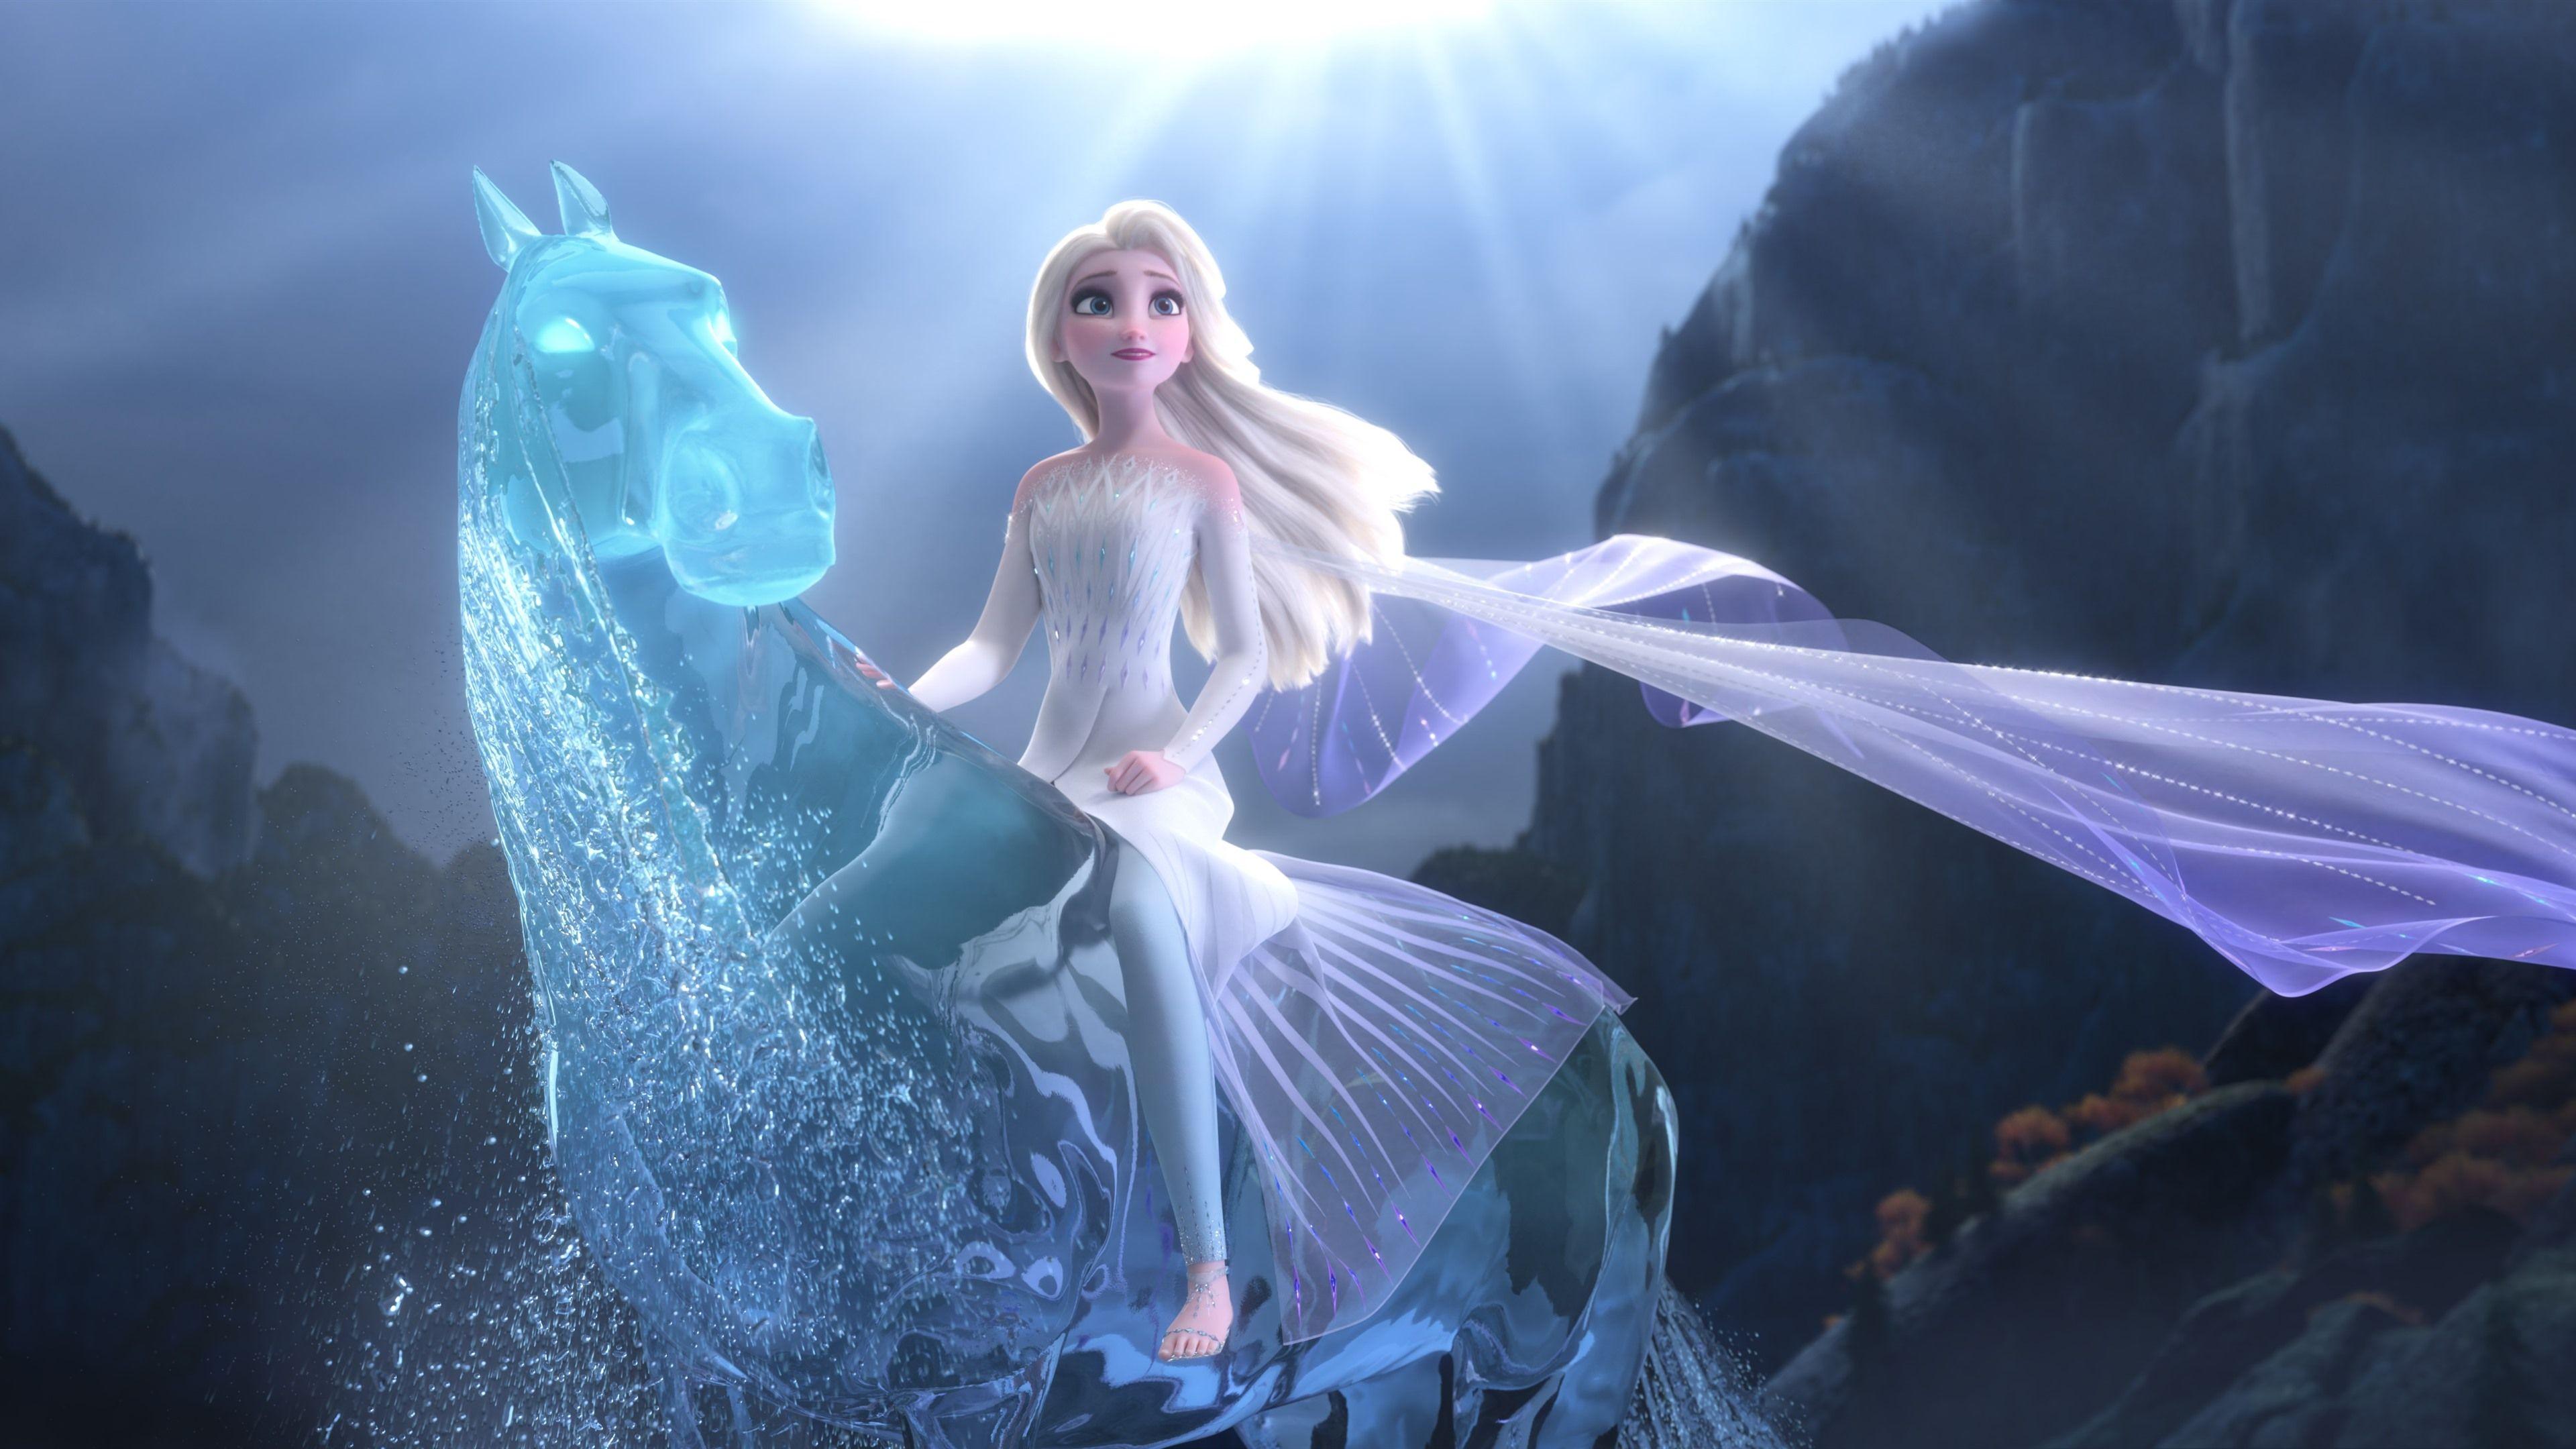 Hình nền Elsa phim Frozen 2: Bộ phim hoạt hình Frozen 2 được yêu thích nhất của Walt Disney Animation Studios đã trở lại cùng Elsa và Anna. Hình nền Elsa phim Frozen 2 sẽ cho bạn một cái nhìn sâu hơn vào câu chuyện và truyền cảm hứng cho bạn qua tấm hình nền tuyệt đẹp.